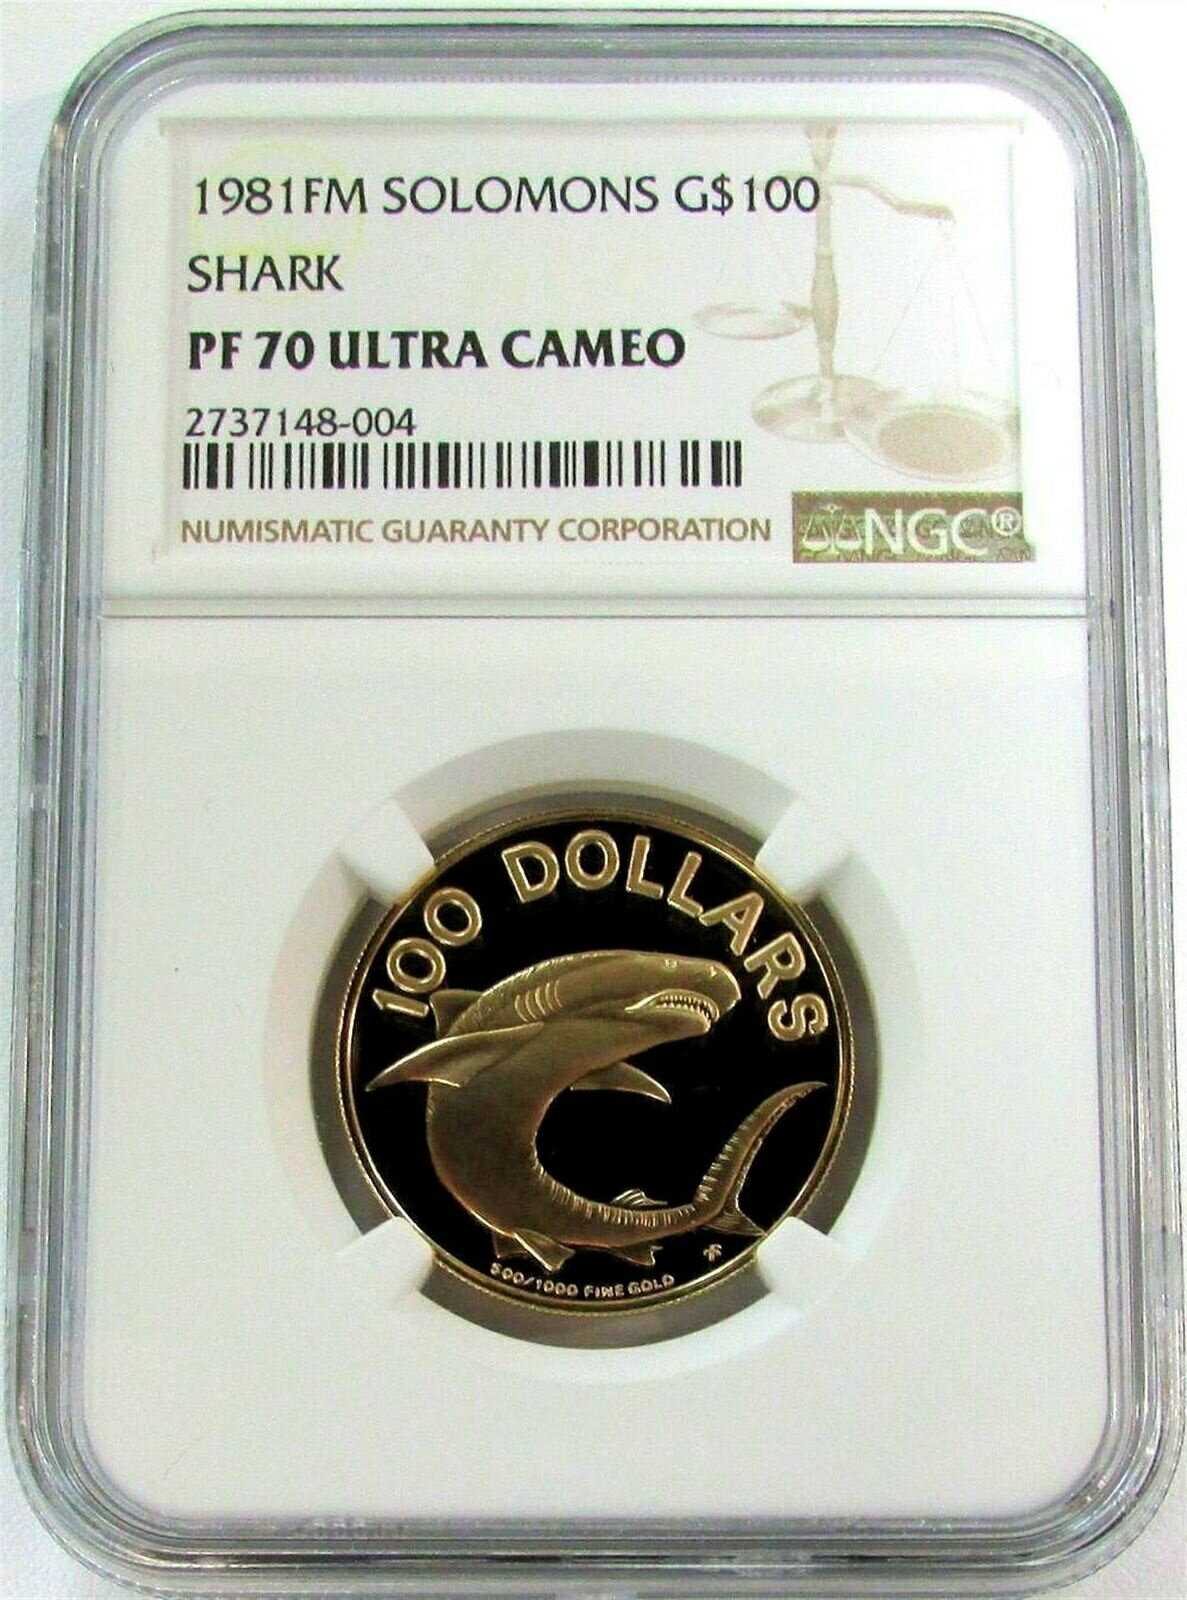  アンティークコイン コイン 金貨 銀貨  1981 GOLD SOLOMONS 675 MINTED $100 SHARK NGC PERFECT PROOF 70 ULTRA CAMEO